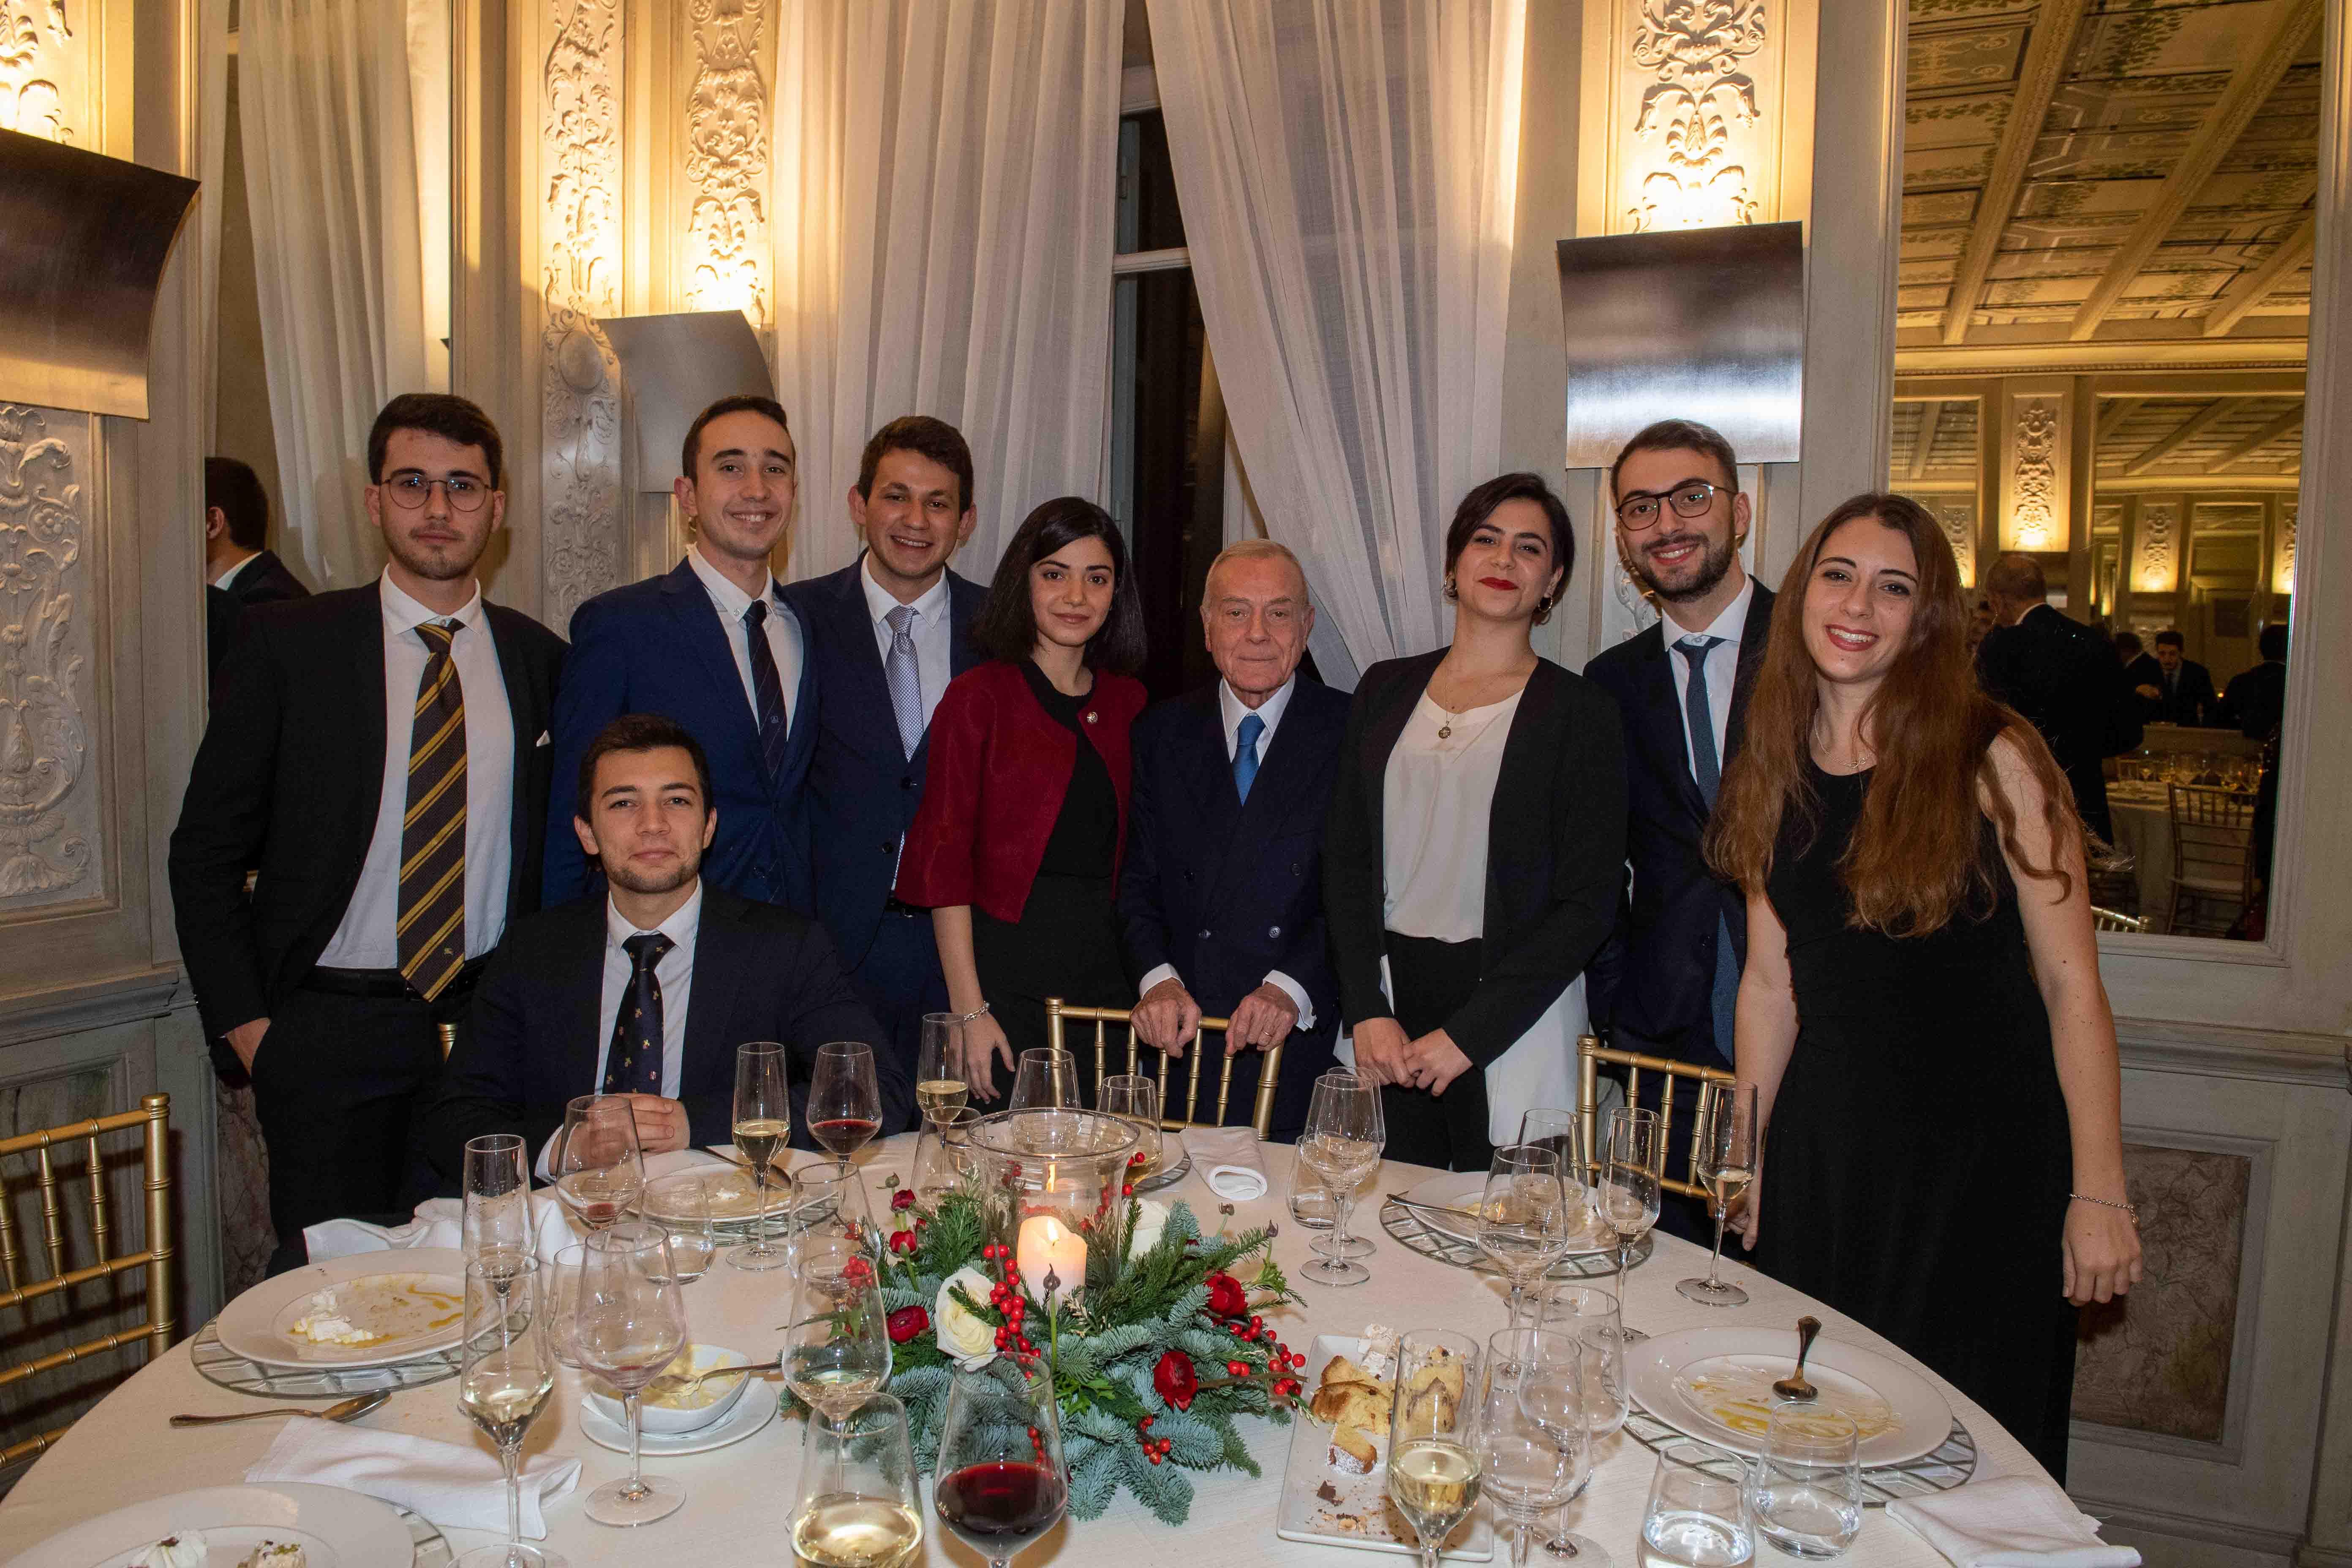 Gruppo Centrale, cena di Natale (Roma - Casina Valadier, 12 dicembre 2019)